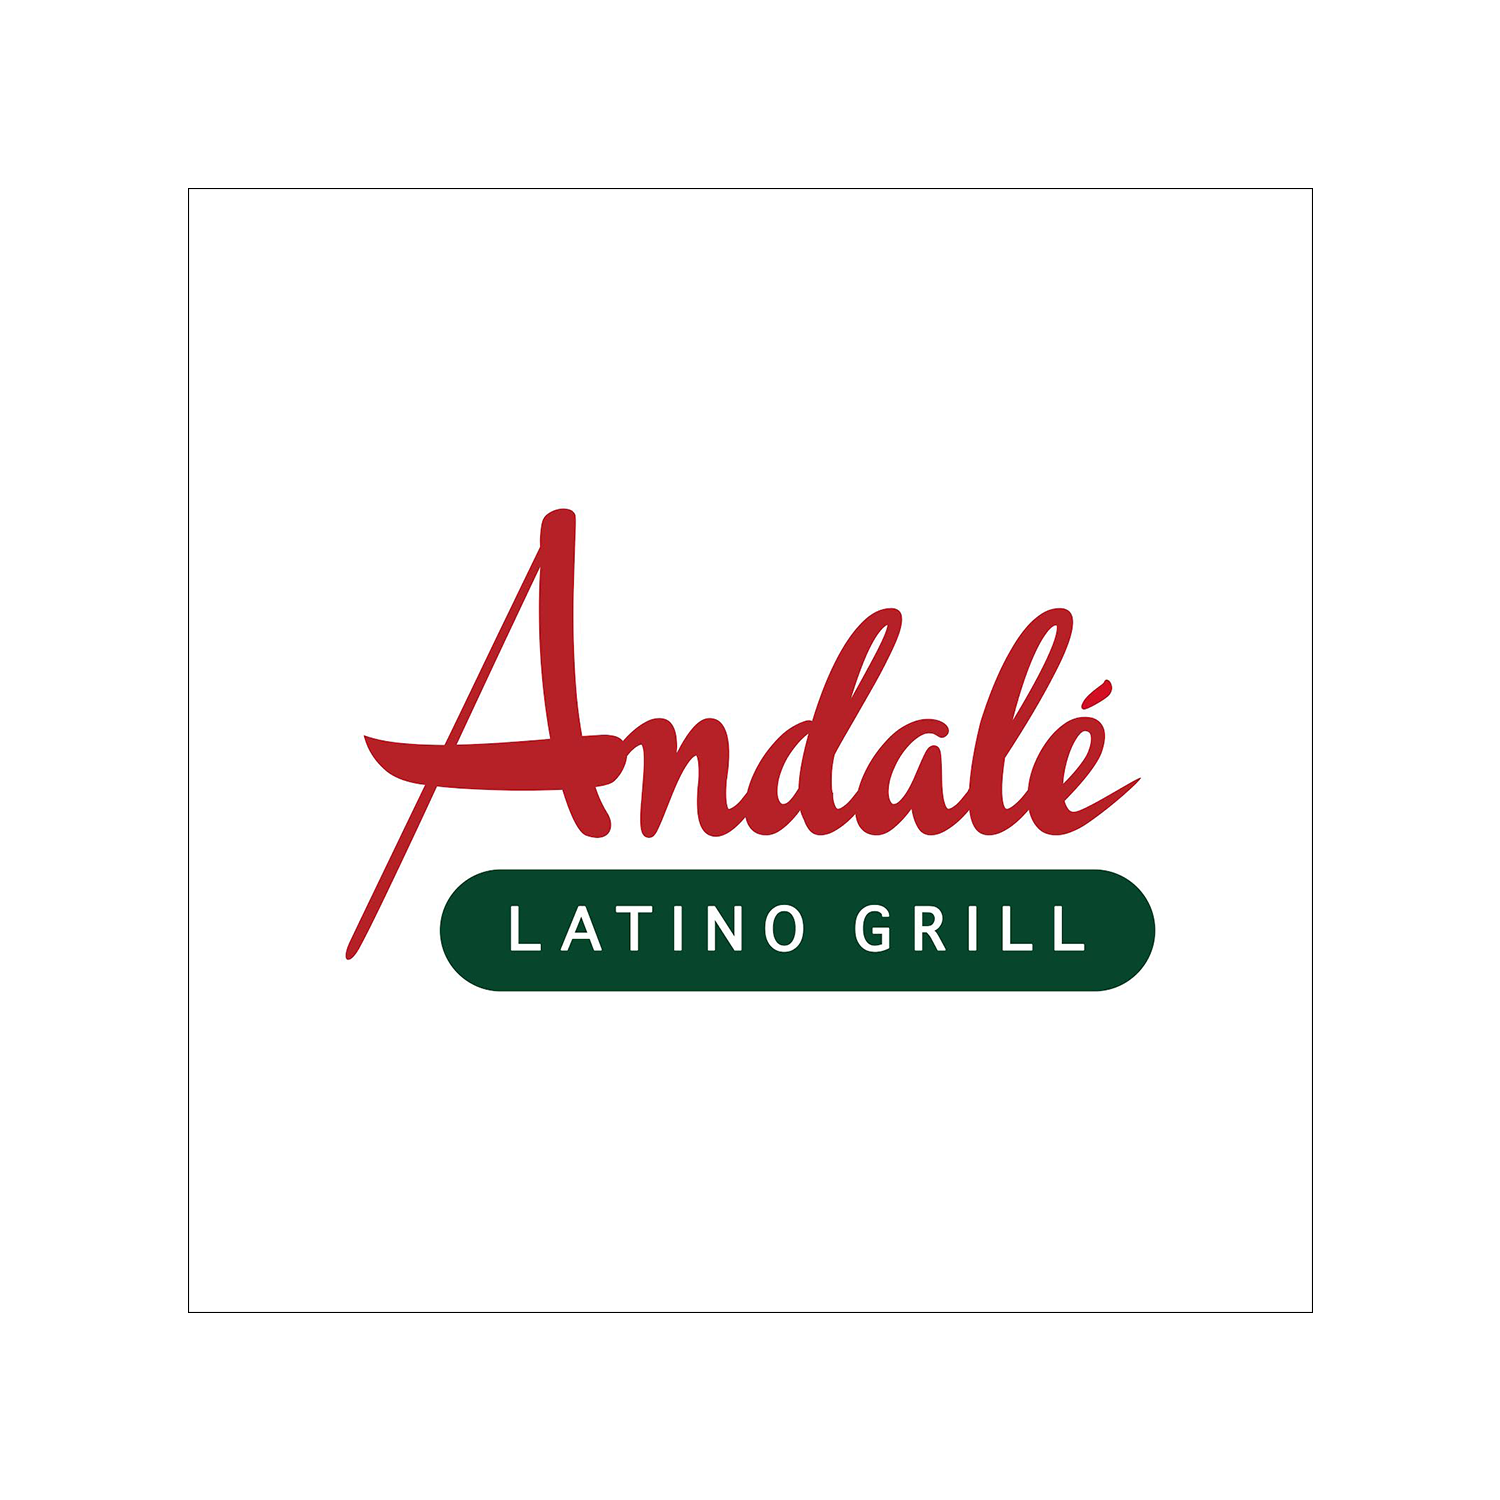 Andalé Latino Grill